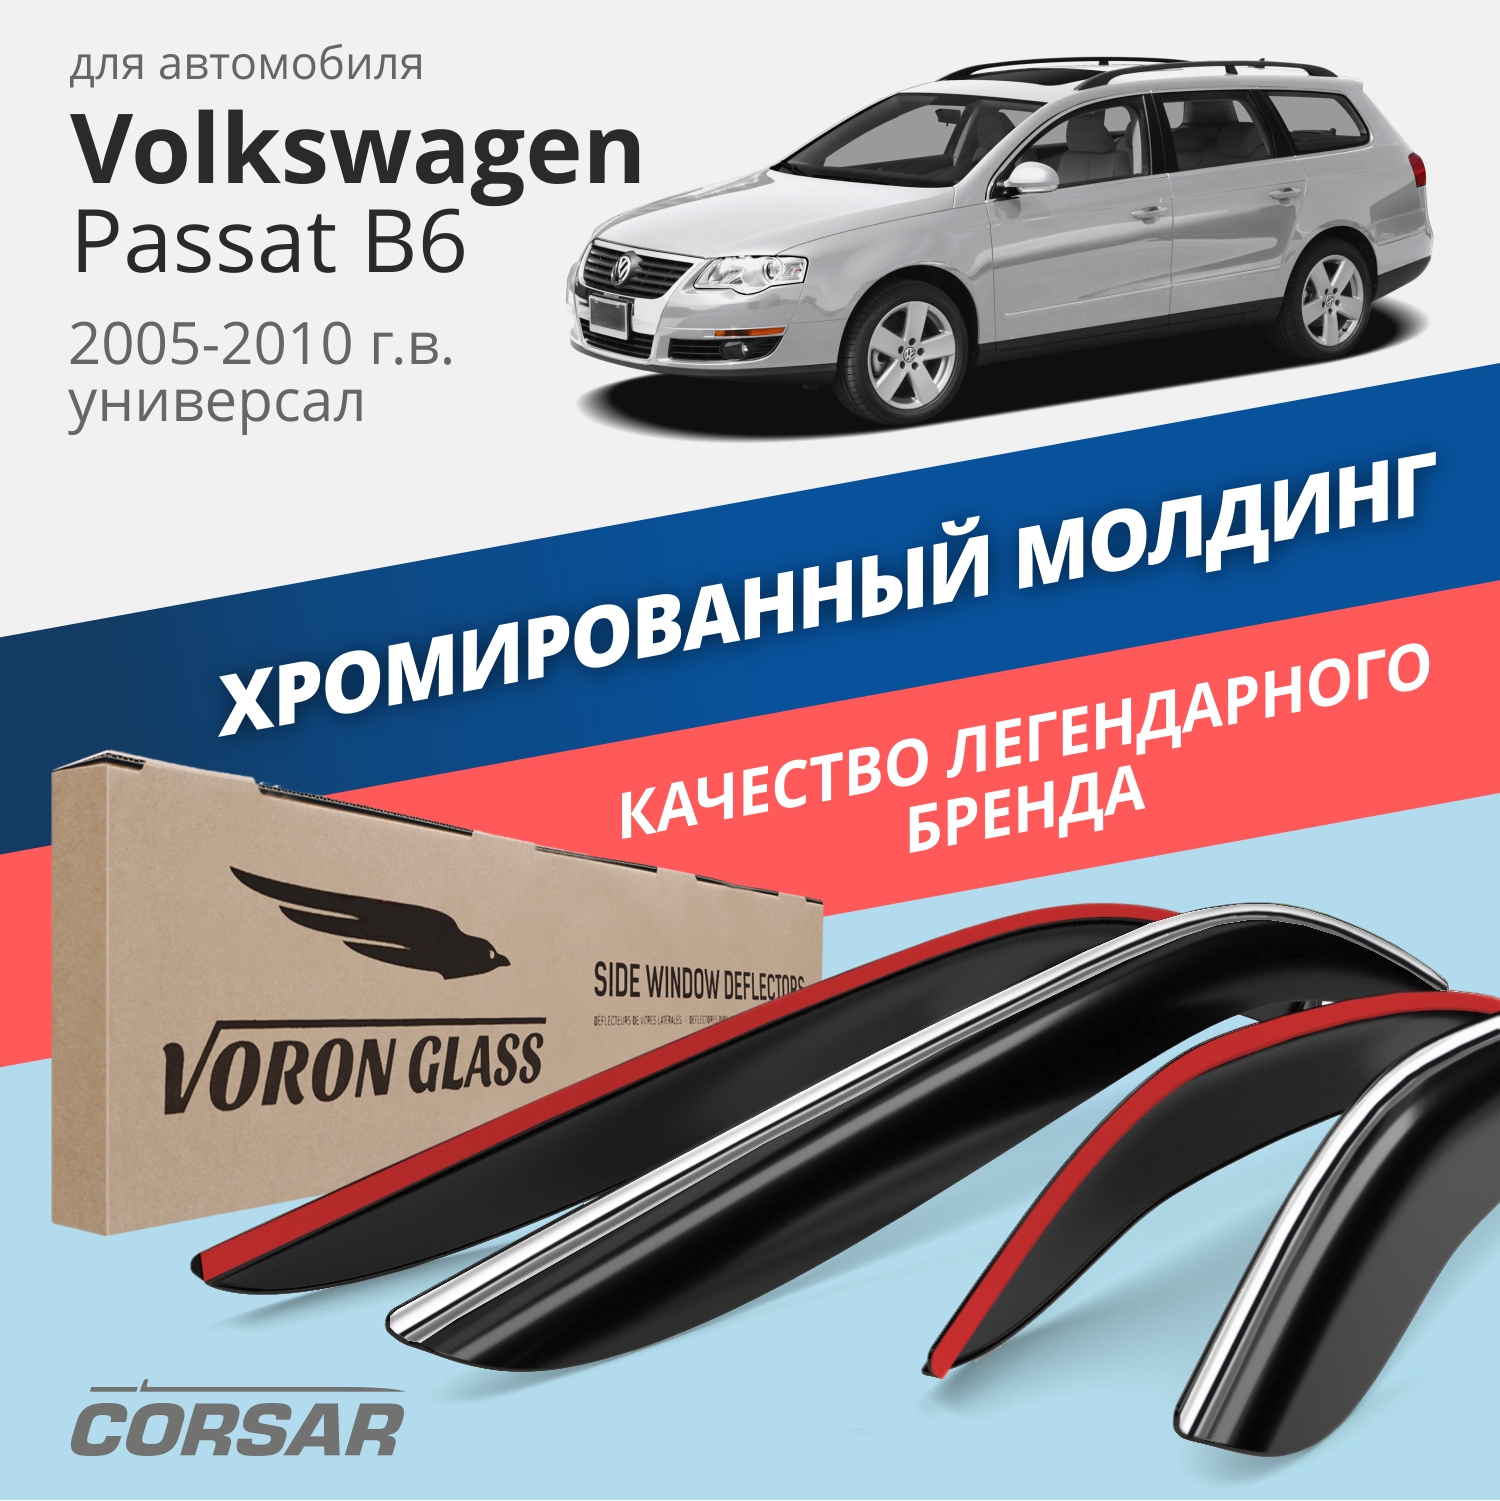 Дефлекторы Voron Glass CORSAR Volkswagen Passat B6 2005-2010 г.в. универсал, хром молдинг